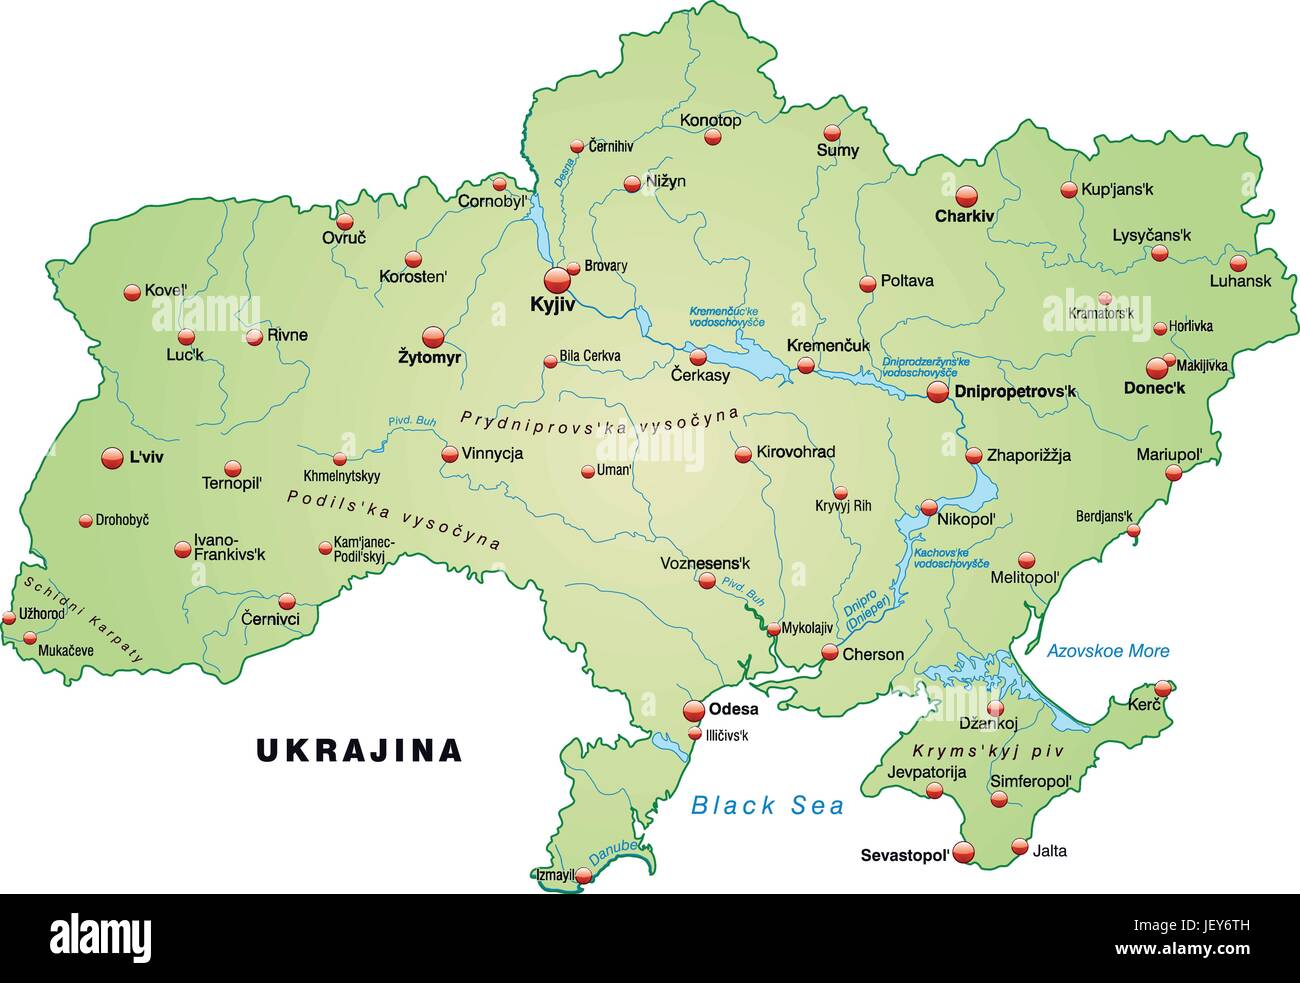 Город сумы на карте. Конотоп на карте Украины. Карта Украины Буча на карте Украины. Сумы Украина на карте. Г Сумы на карте Украины.